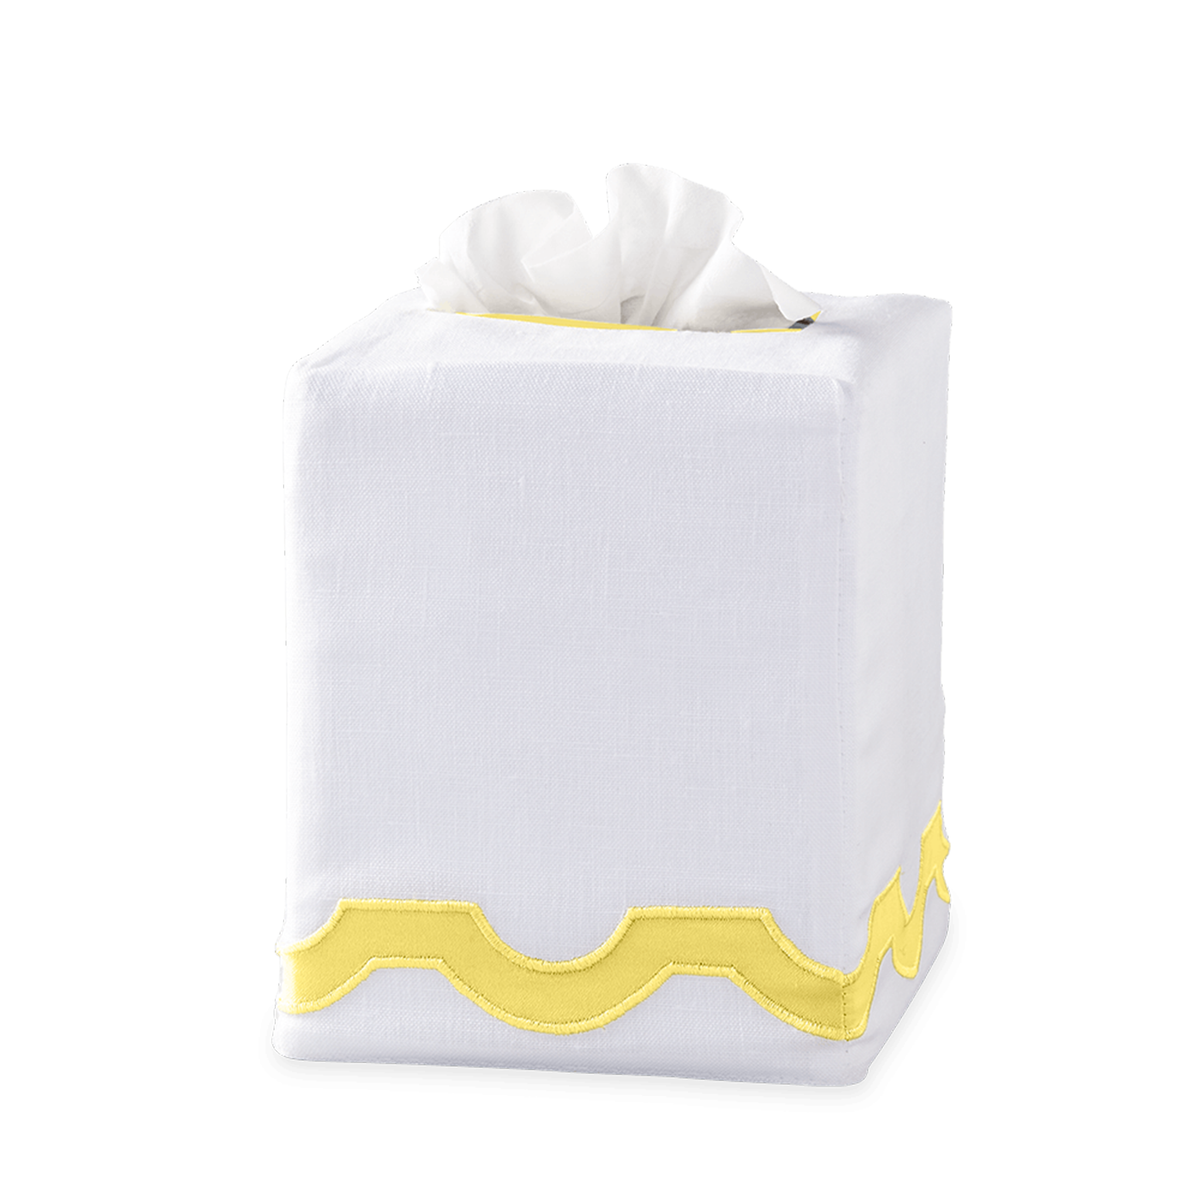 Silo Image of Matouk Mirasol Tissue Box Cover in Lemon Color